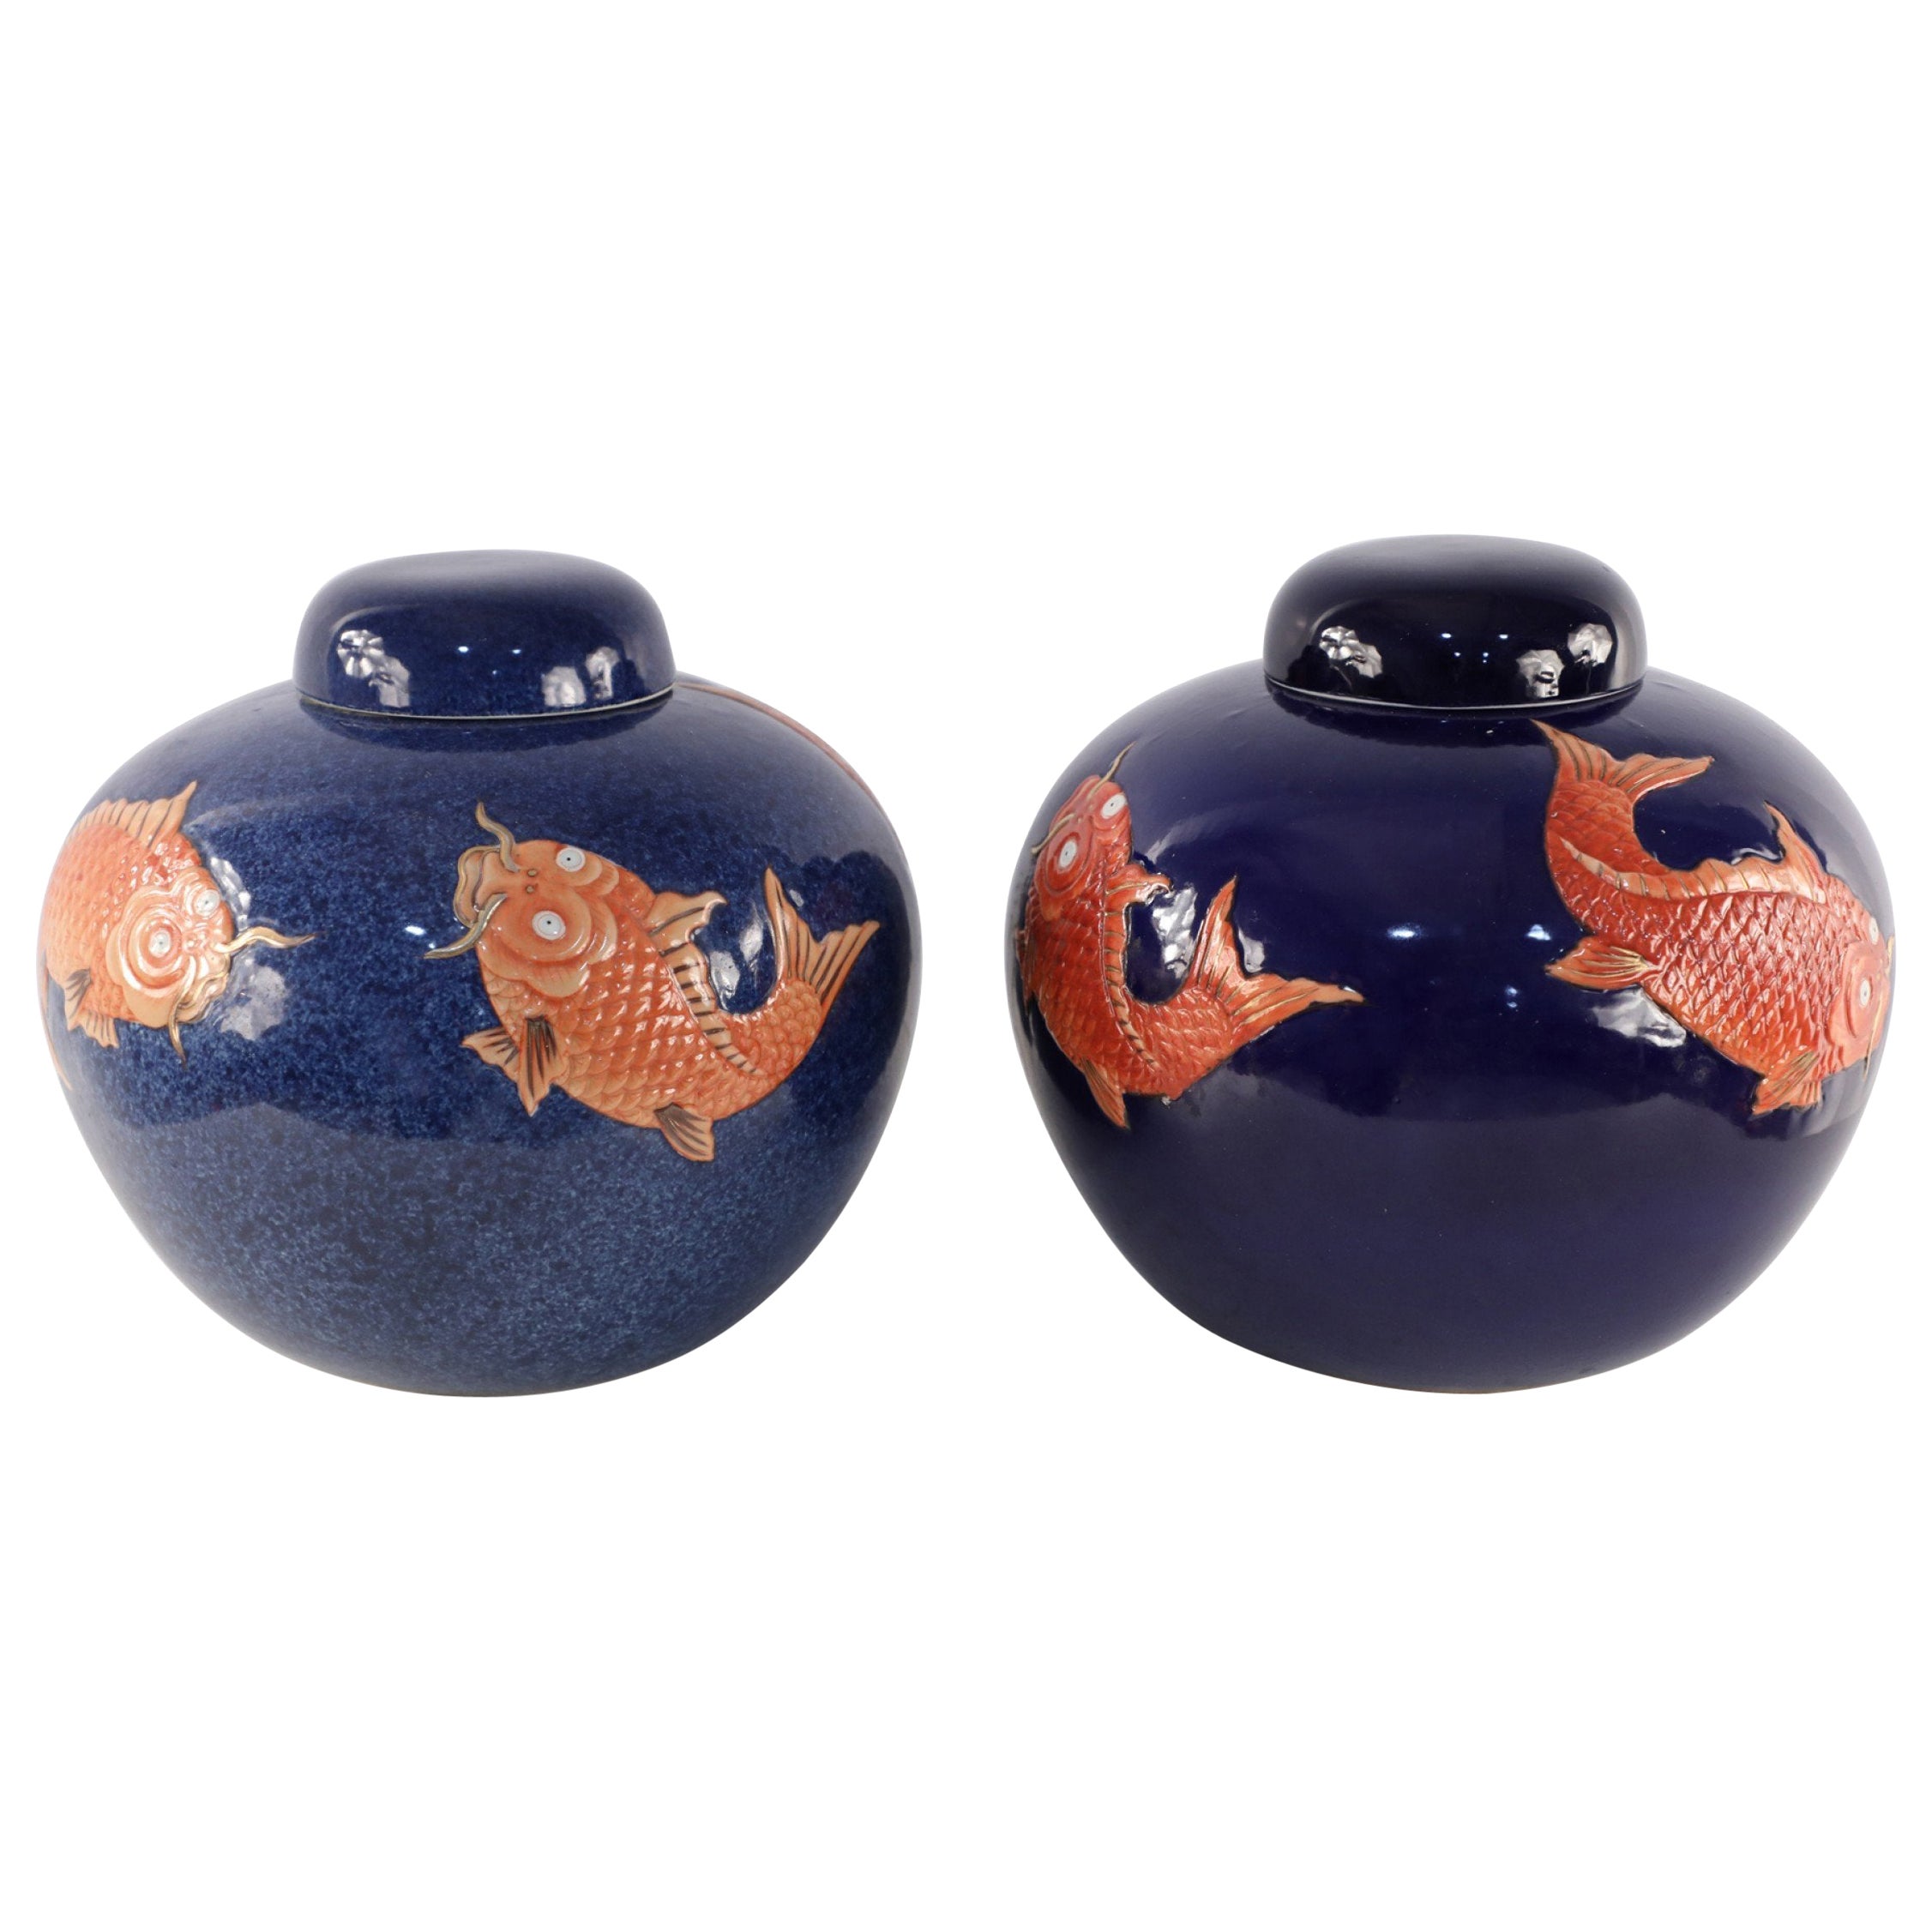 Chinesisch Blau und Orange Fish Design Runde Deckel Porzellan Krüge